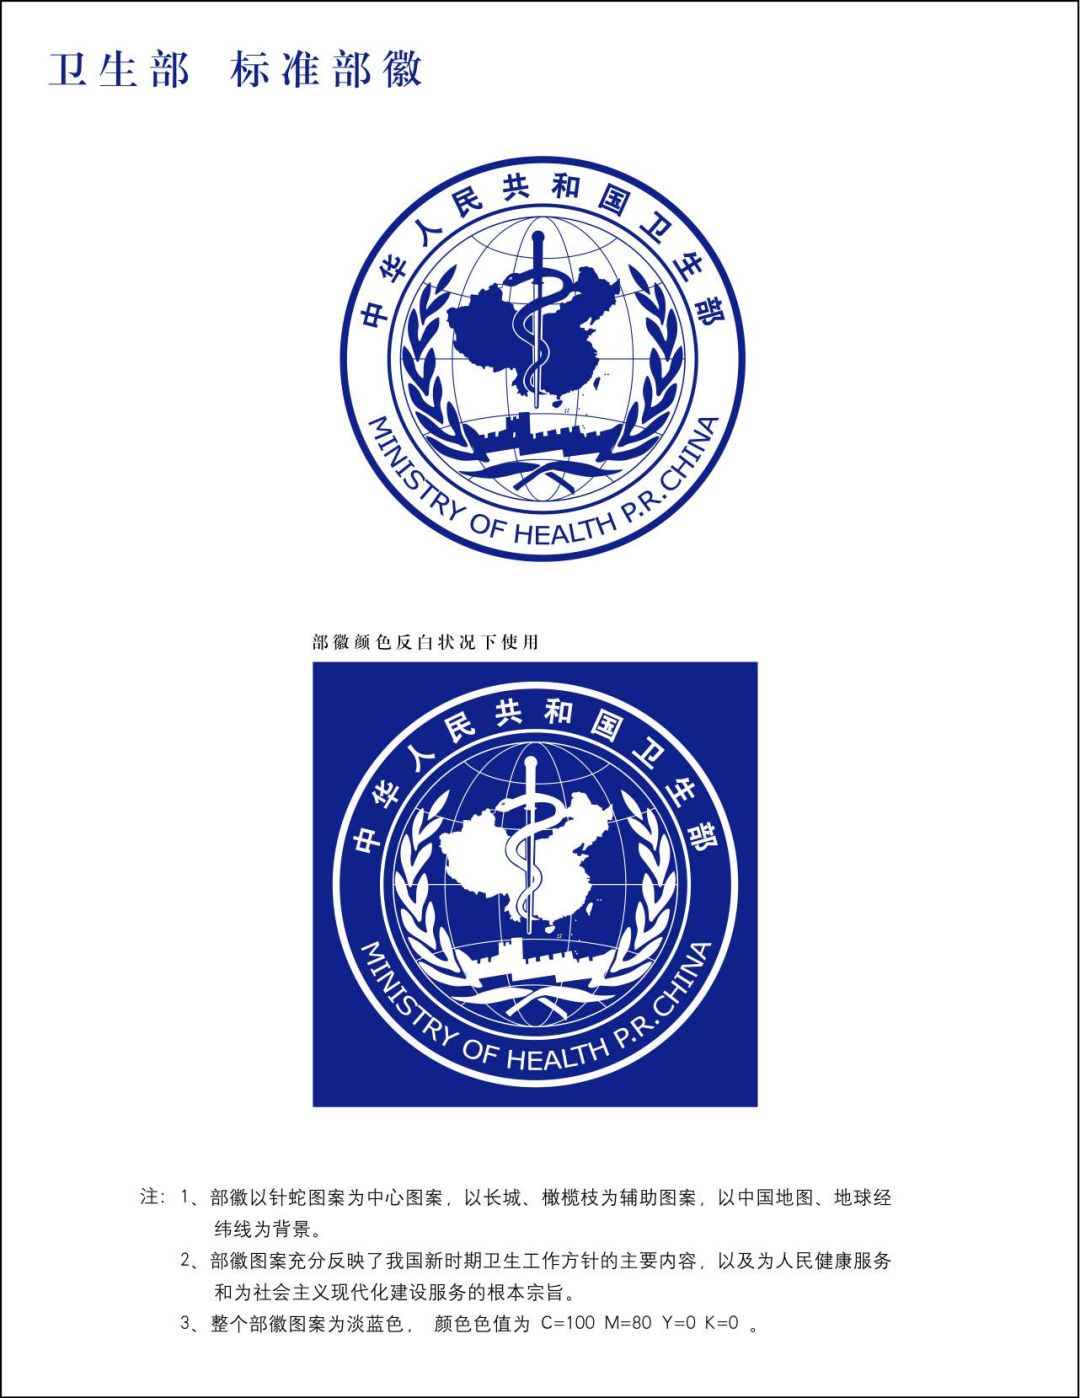 国家卫建委前身中国卫生部部徽也有蛇杖的标志